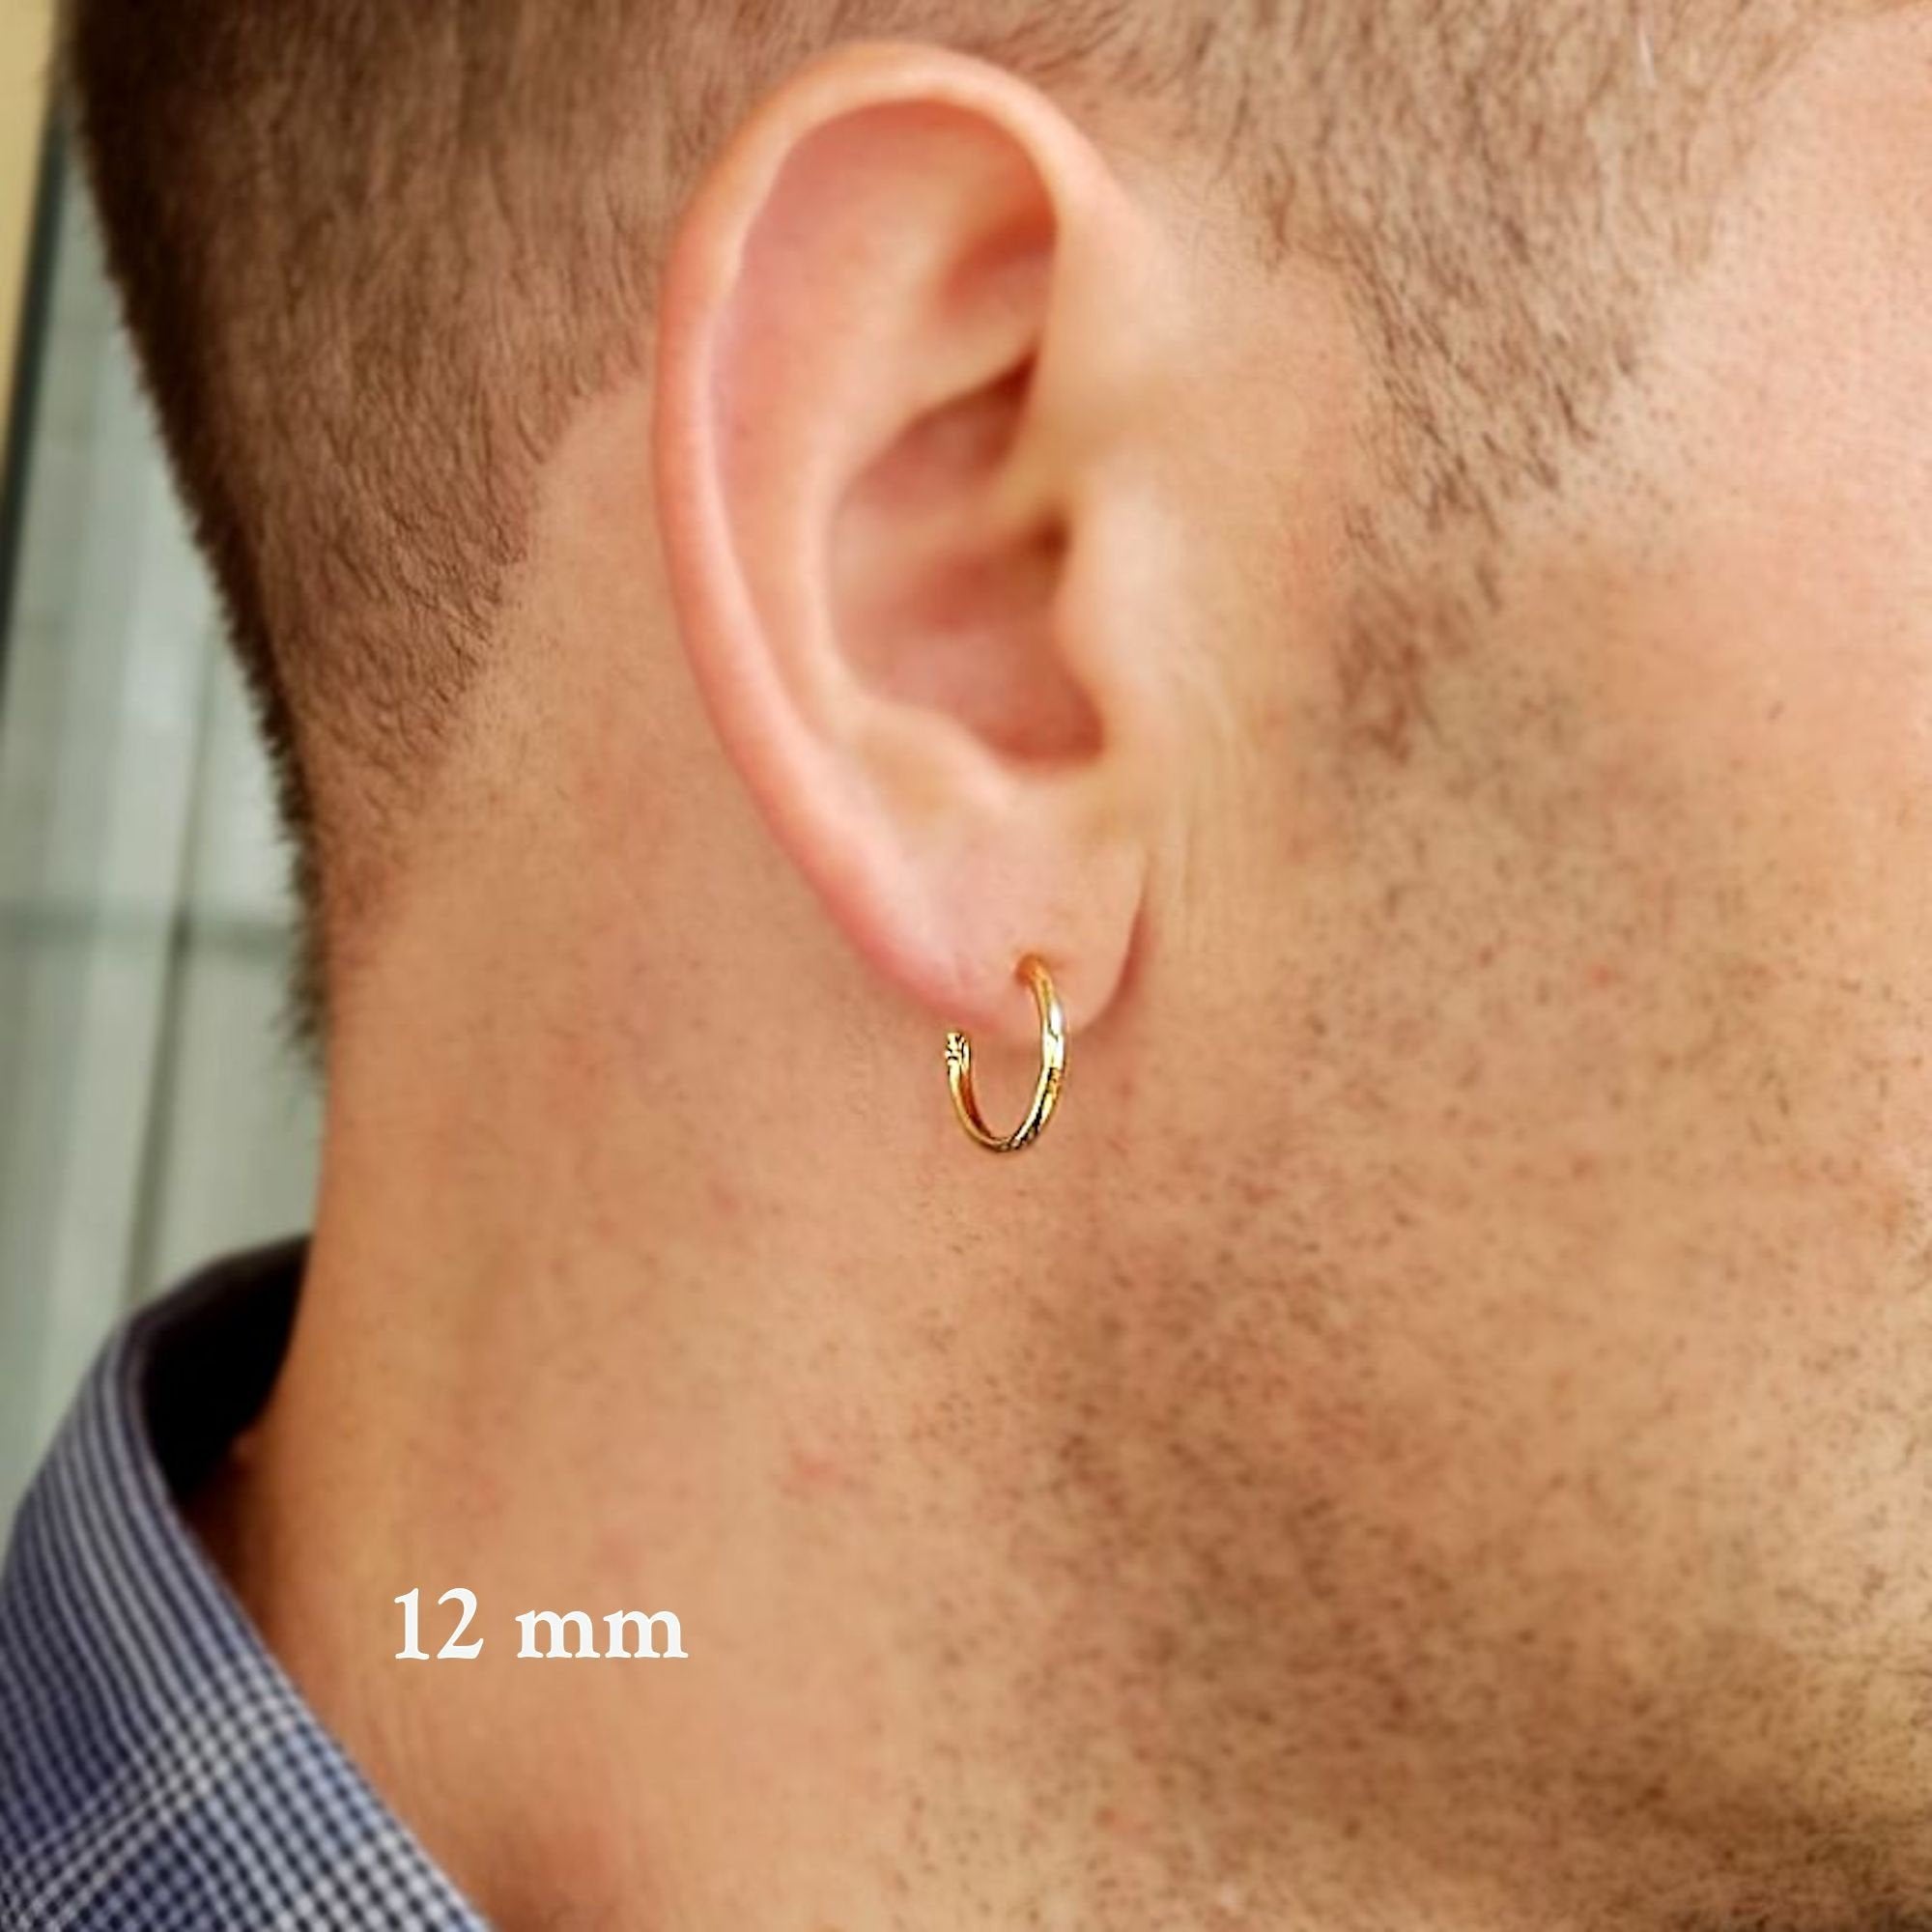 Small Hoops for men - Huggie hoop earrings - Mini Hoops